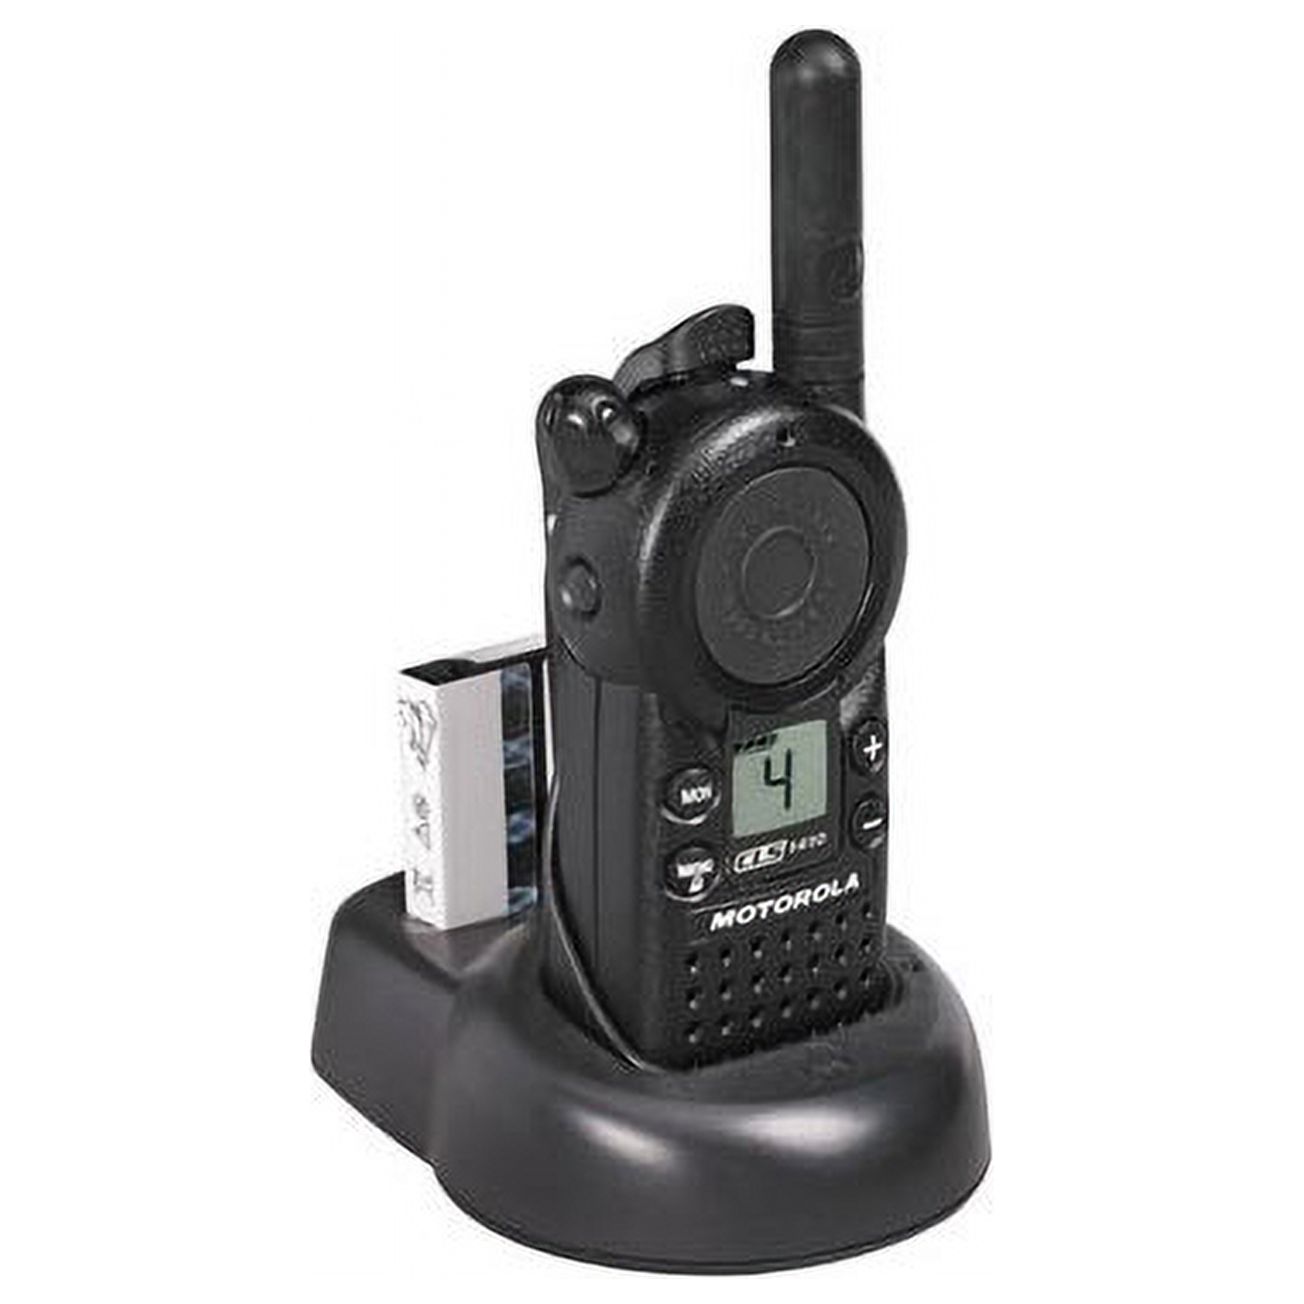 Pack of Motorola CLS1410 Two way Radio Walkie Talkies (UHF)